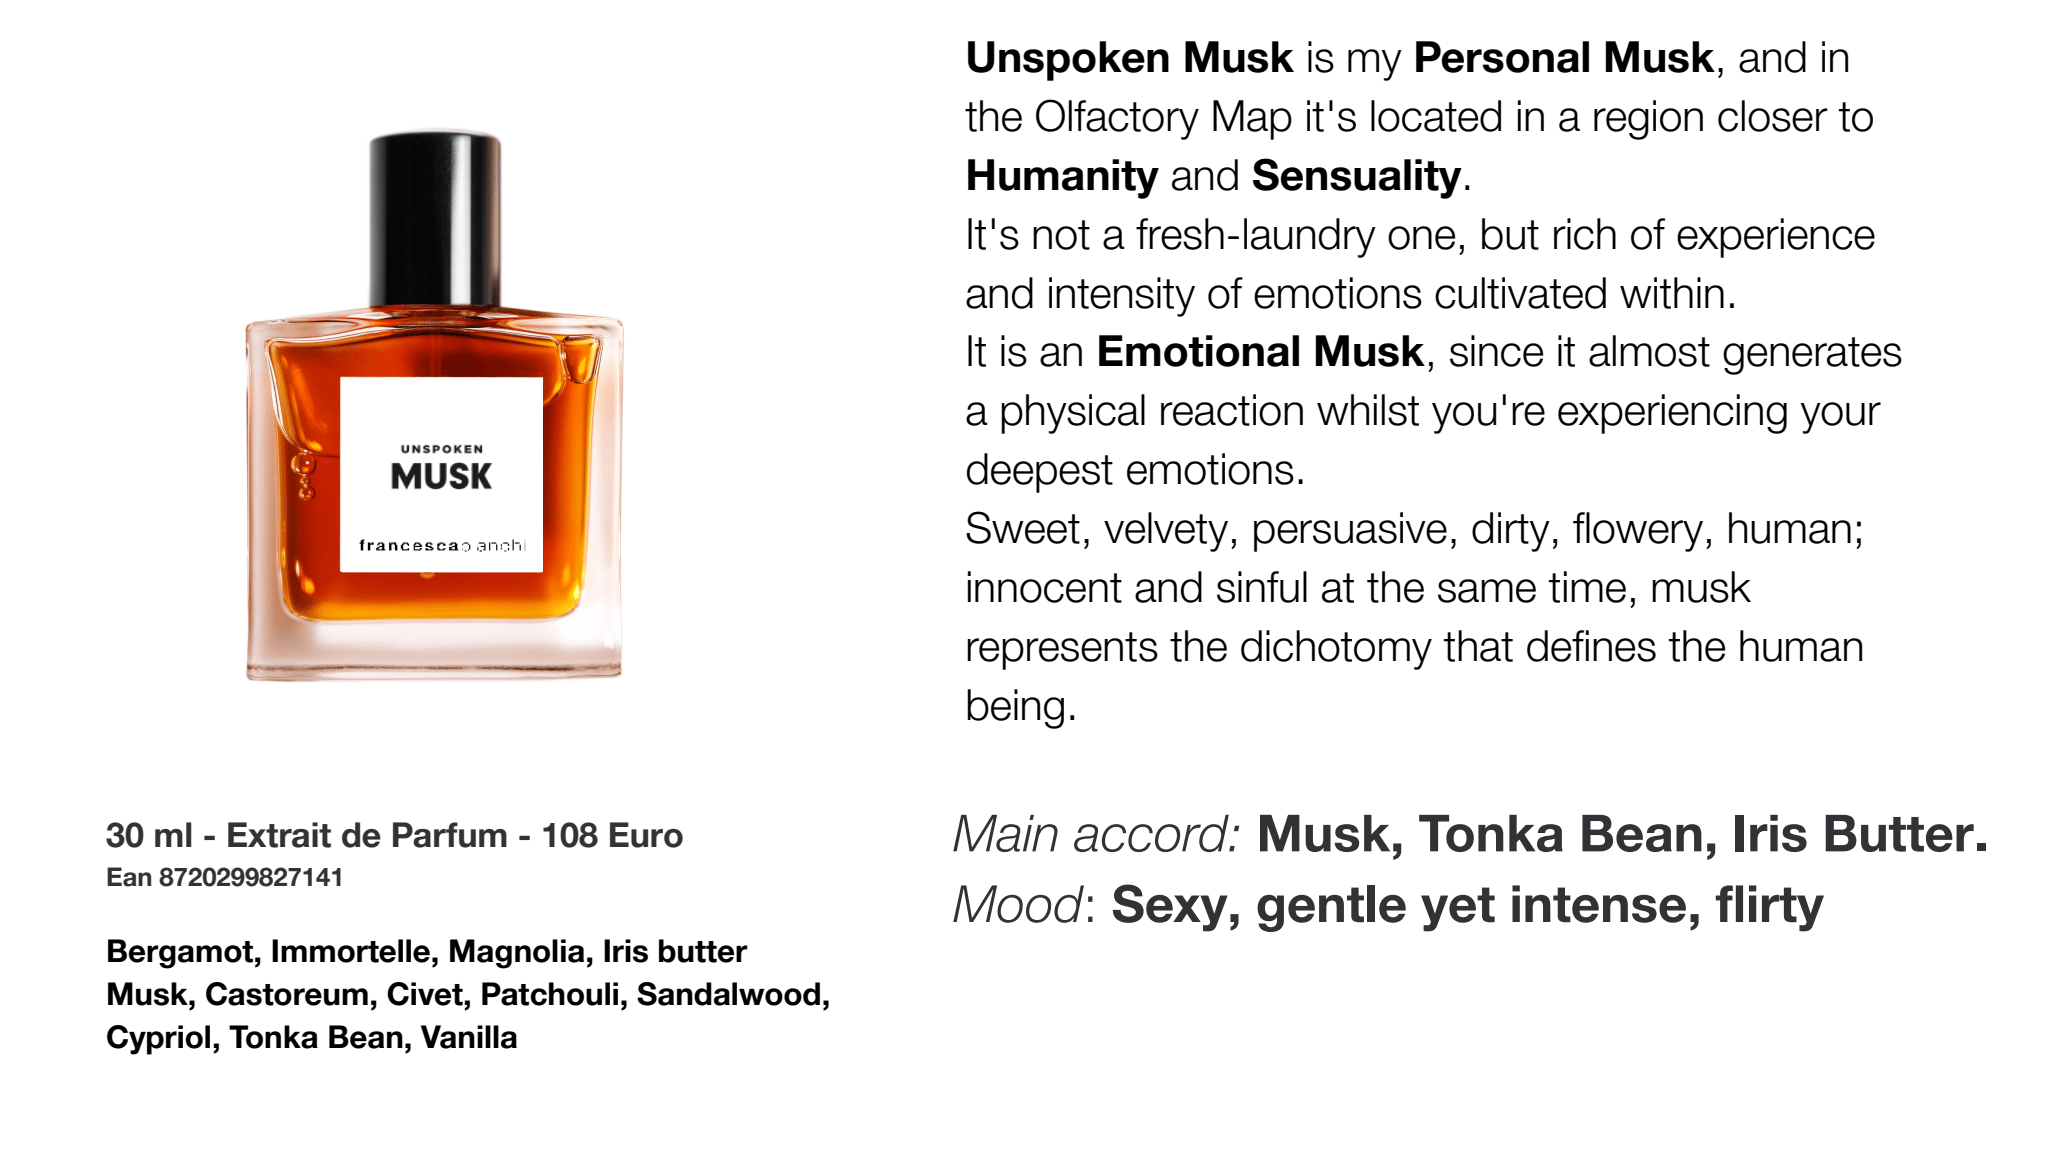 NOVINKA - Unspoken Musk